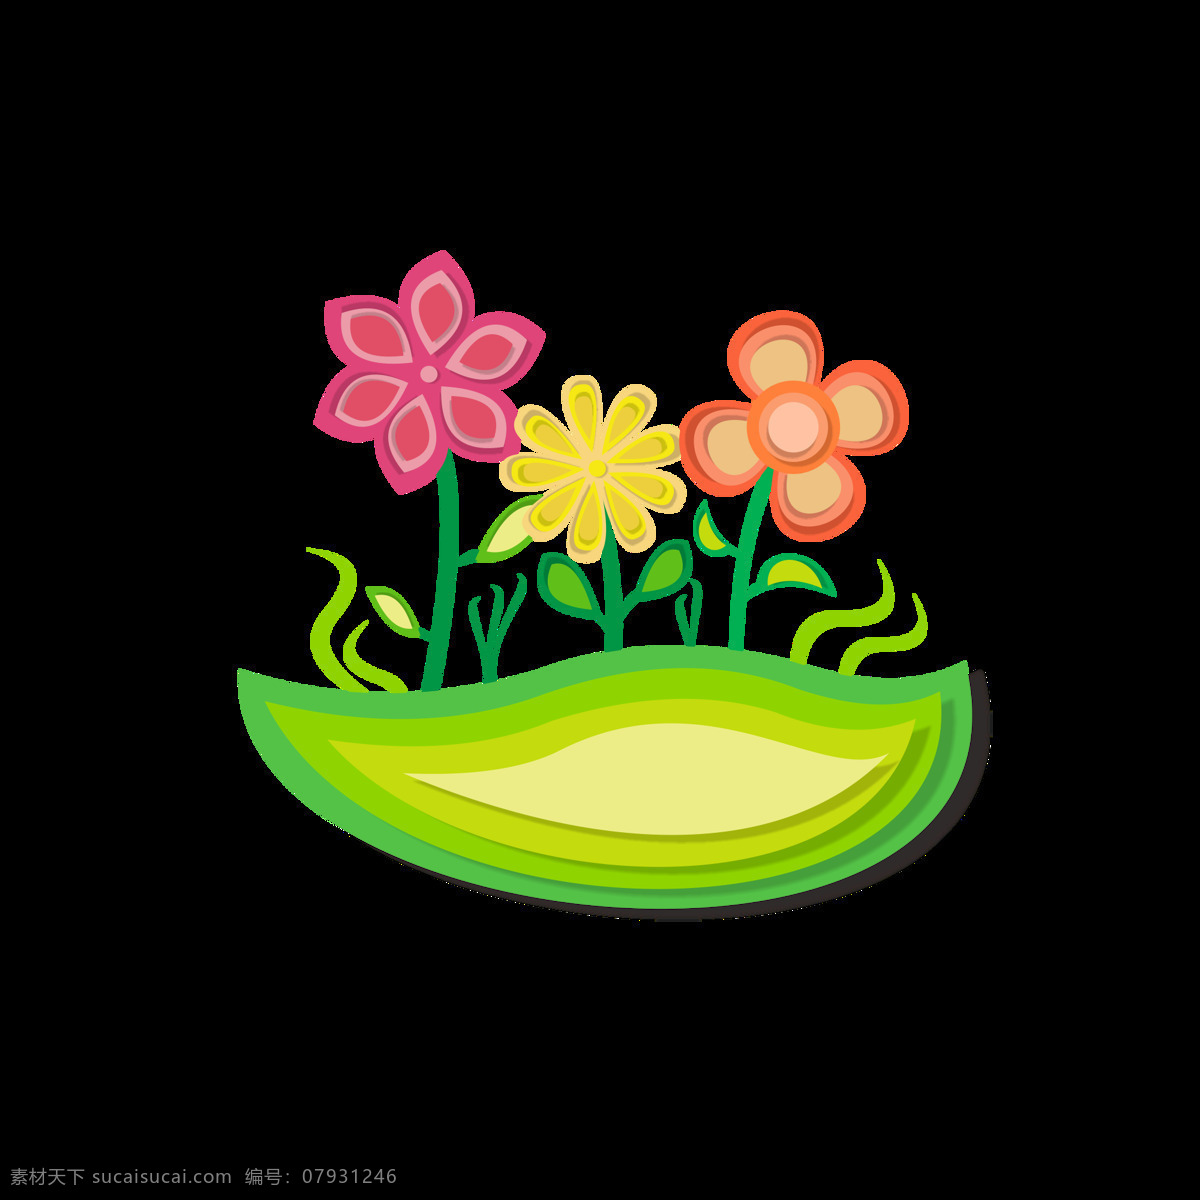 插画 折纸 风 植物 盆 栽花 卡通 可爱 绿色 盆栽 卡通可爱 新鲜 花 折纸风格 好心情